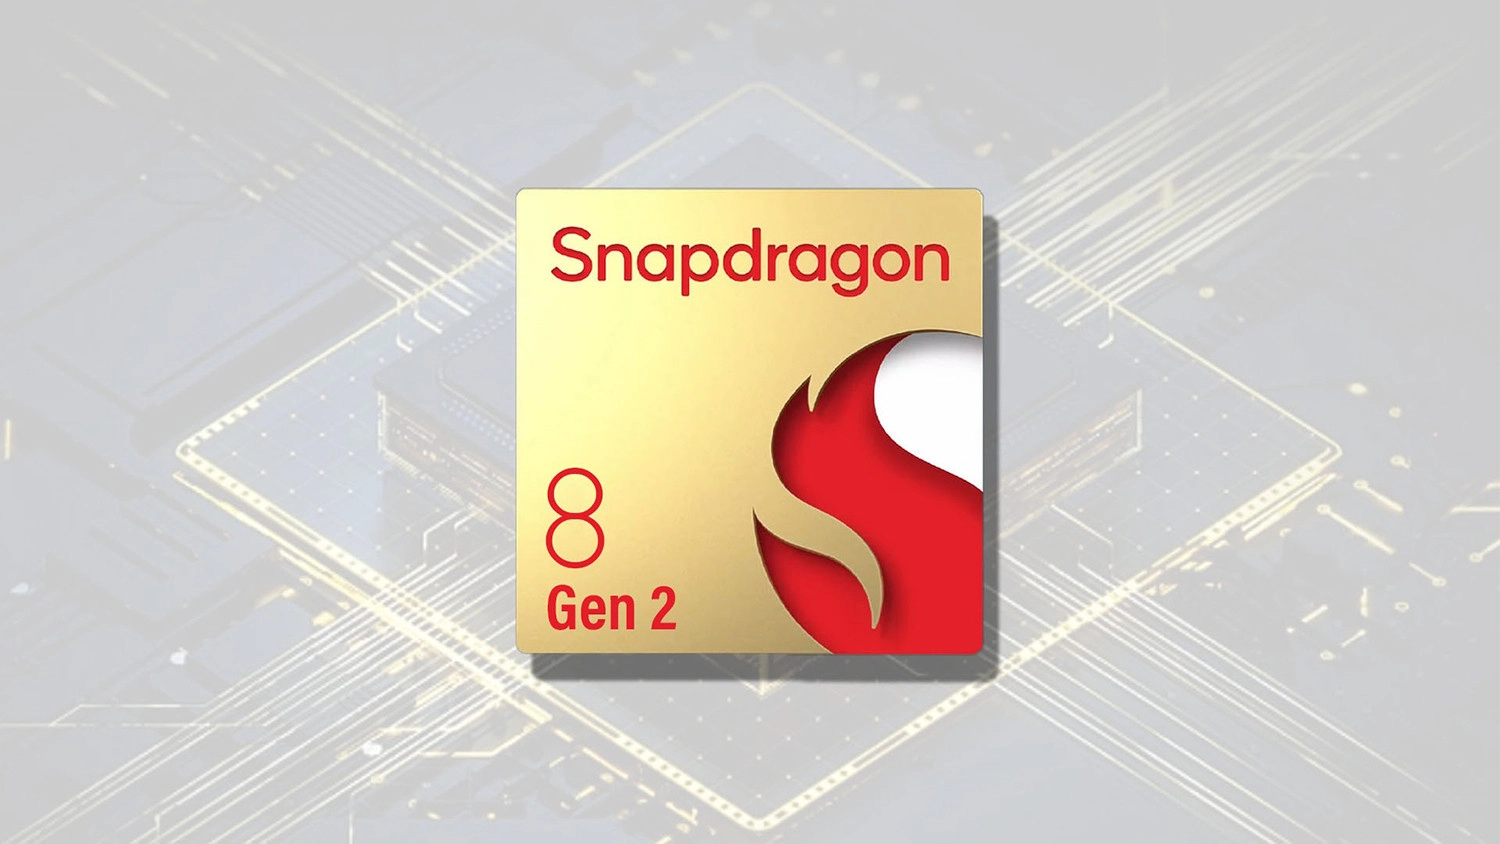 oppo-find-n3-lo-anh-render-chip-snapdragon-8-gen-2